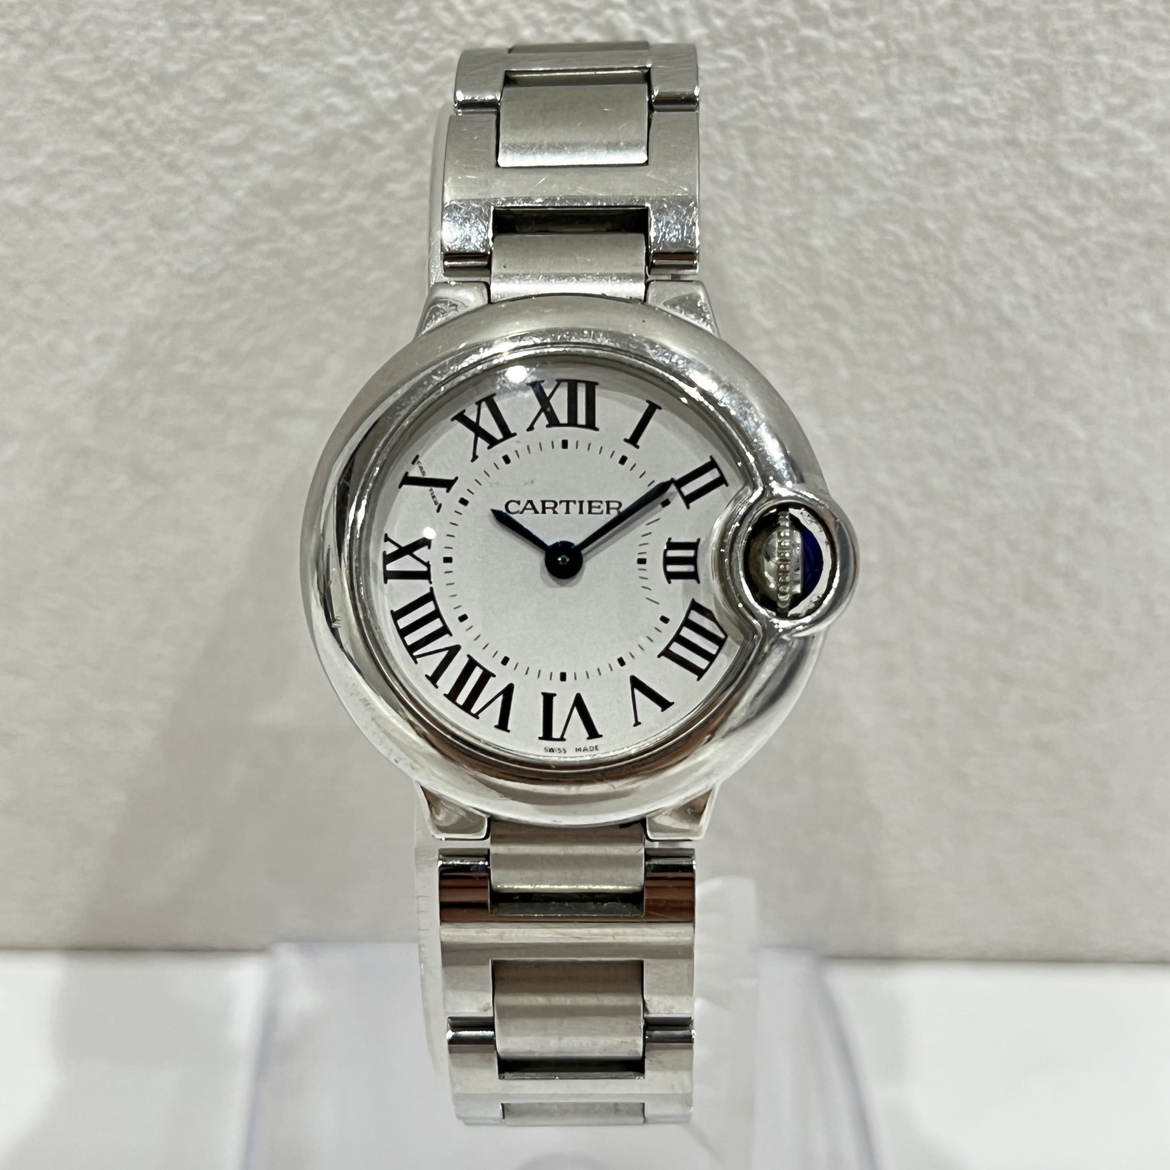 カルティエのバロンブルーSM クォーツ時計 W69010Z4の買取実績です。